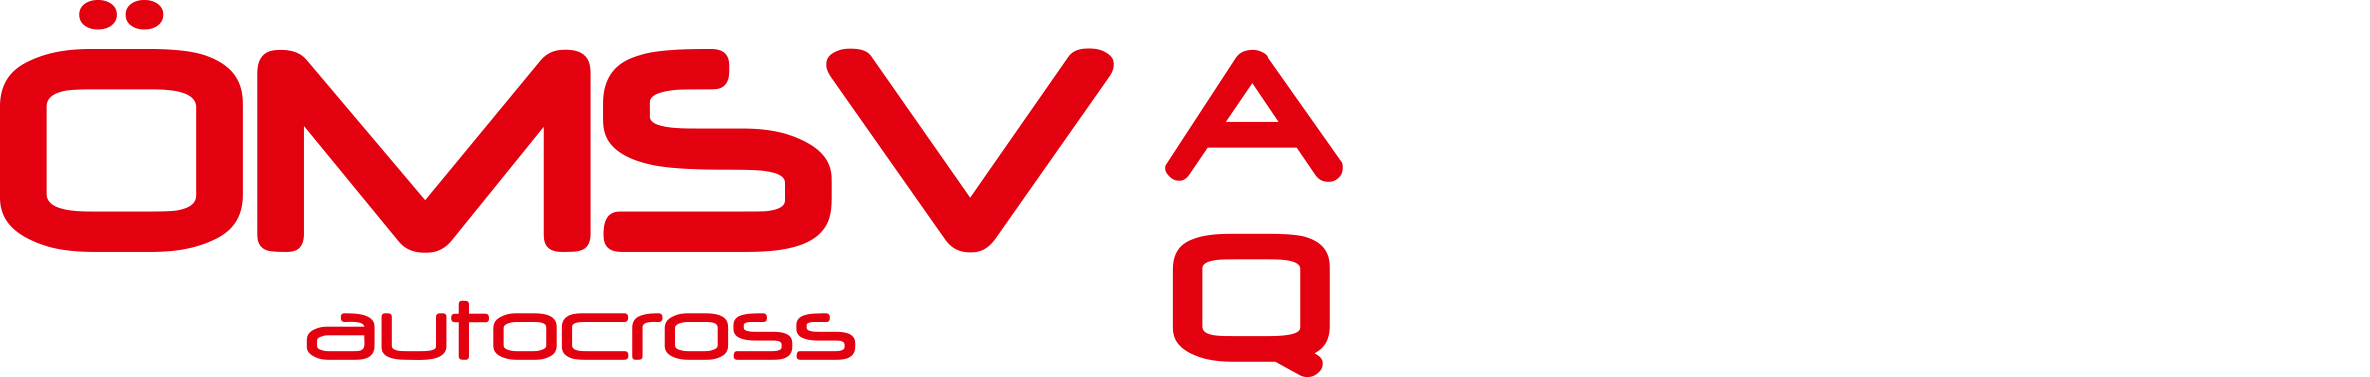 ÖMSV Autocross, Quad